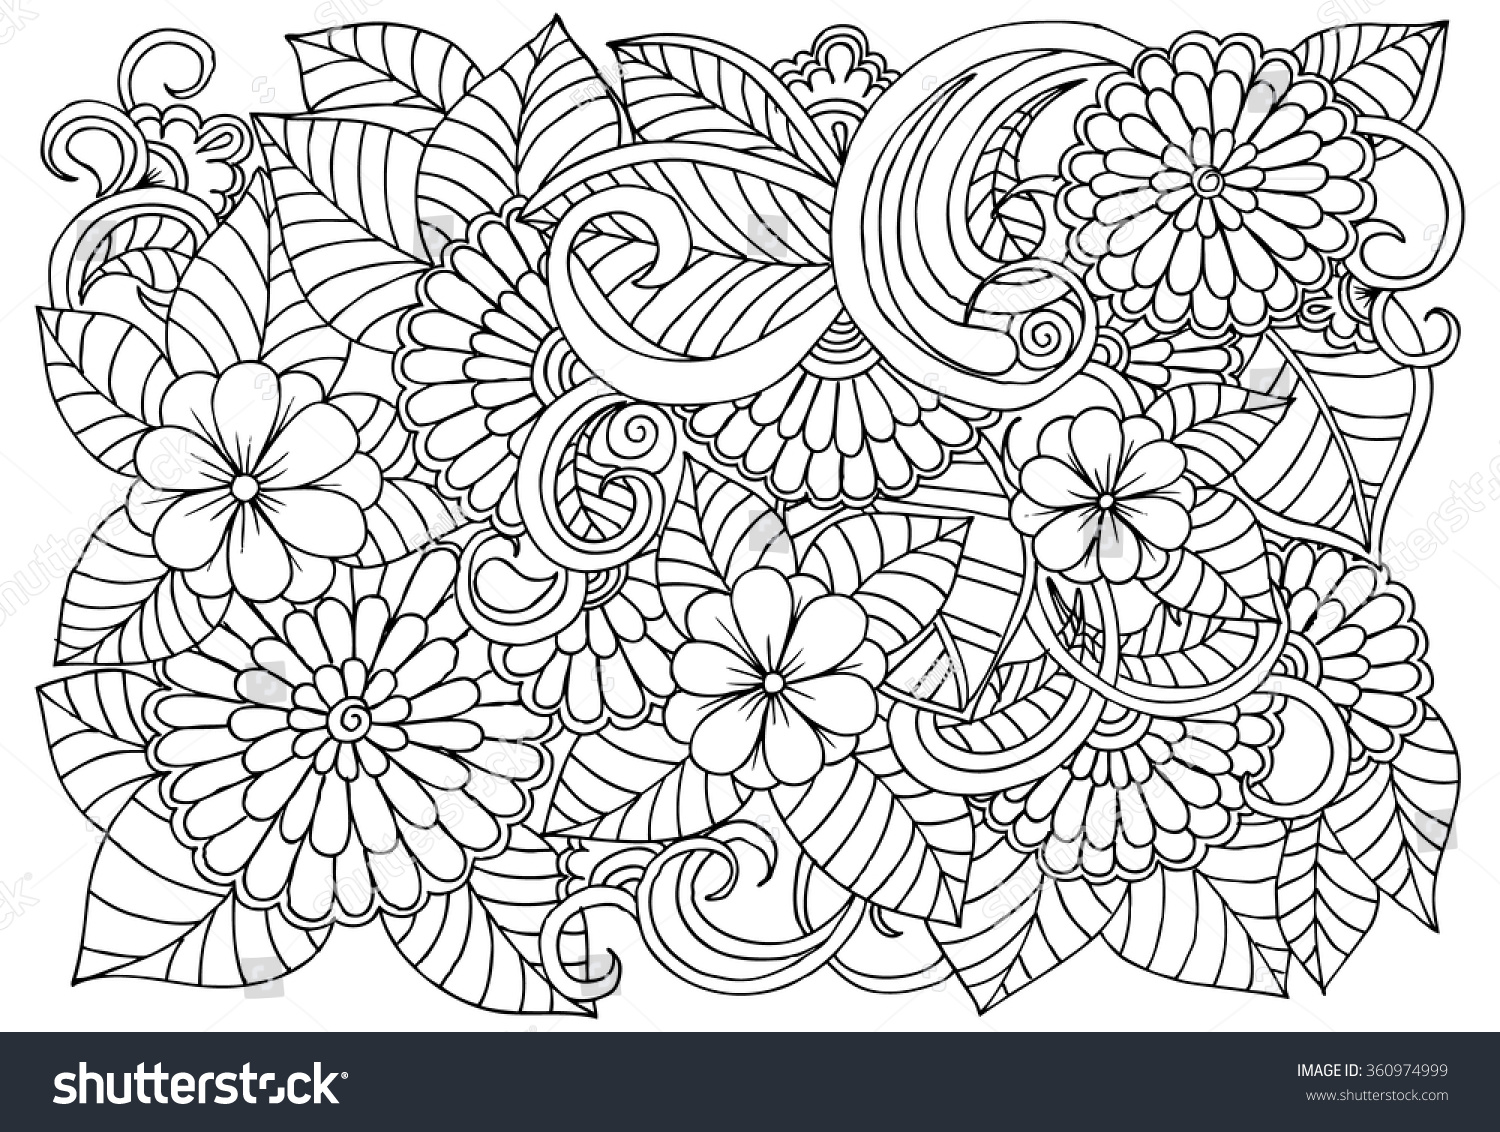 zen doodle free coloring pages - photo #49